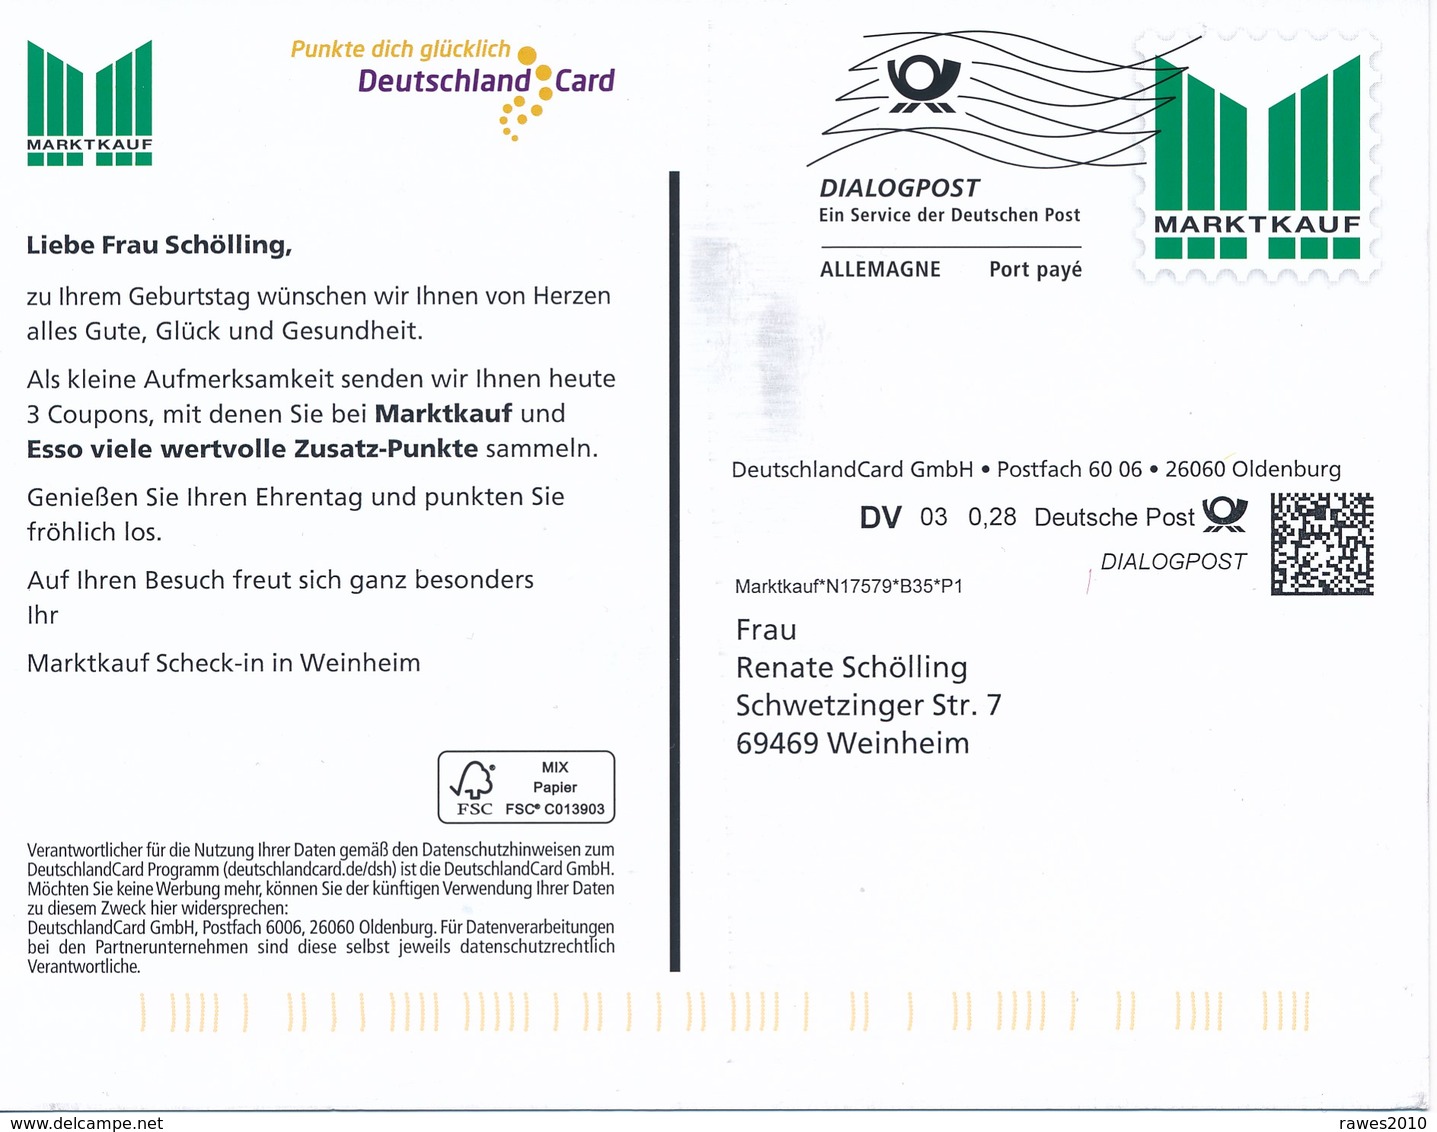 BRD Oldenburg Dialogpost Allemagne DV 03 0,28 Euro FRW 2020 Marktkauf DeutschlandCard GmbH - Lettres & Documents